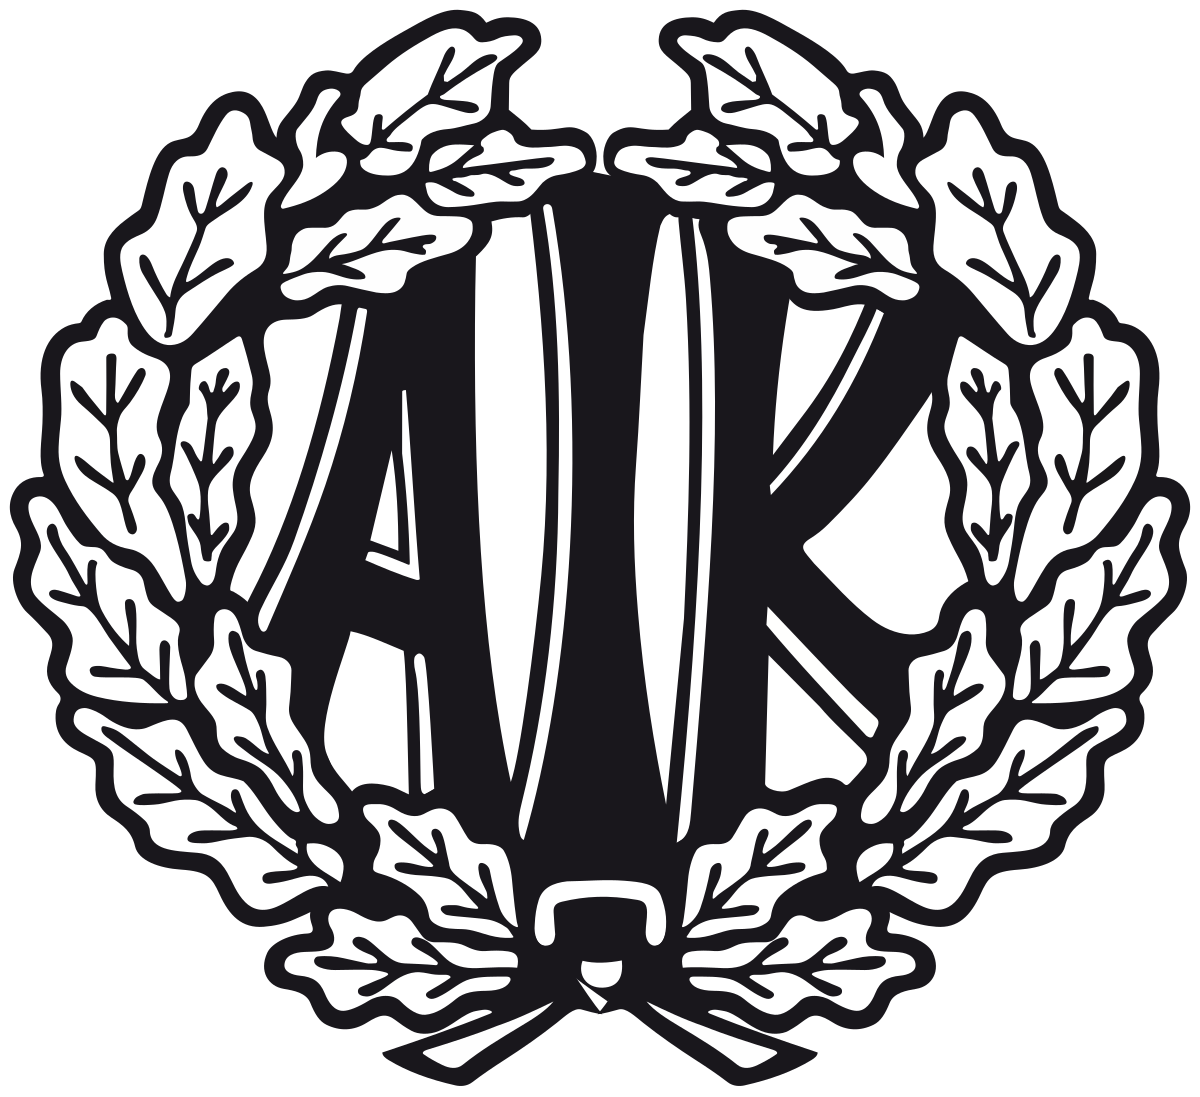 Oskarshamns AIK emblem